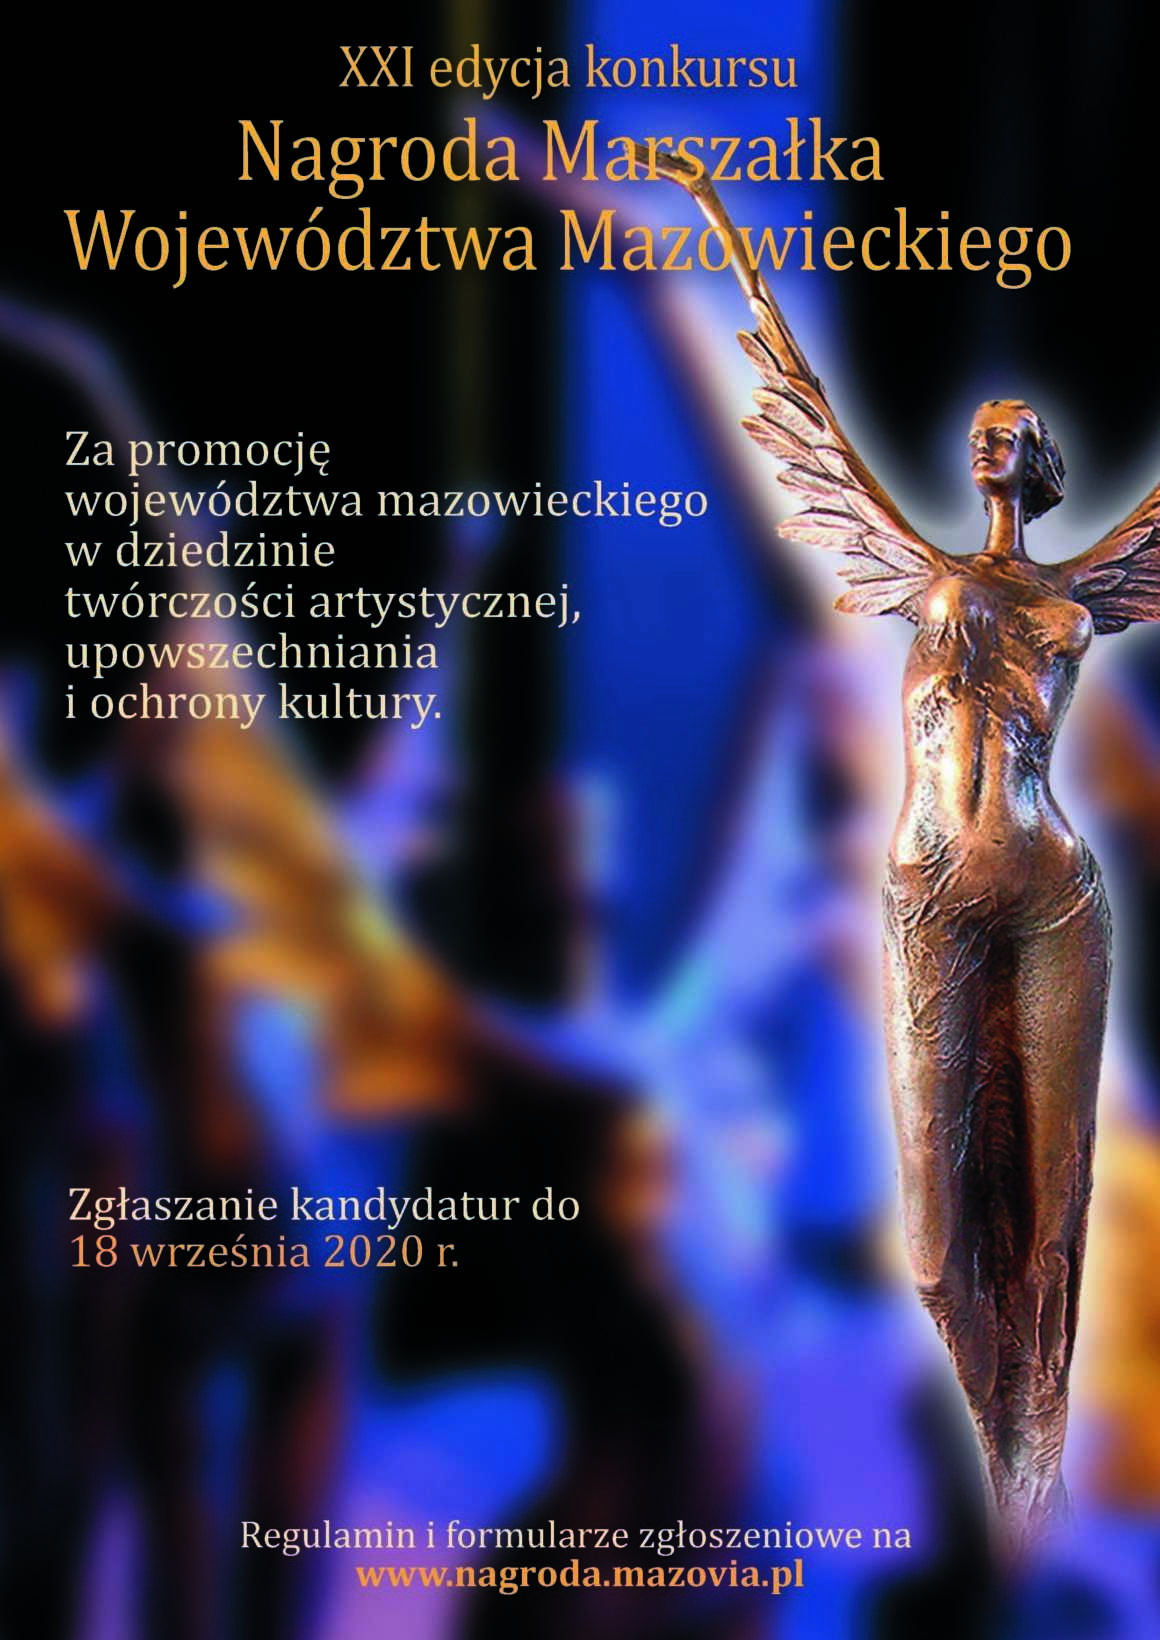 XXI edycja konkursu Nagroda Marszałka Województwa Mazowieckiego